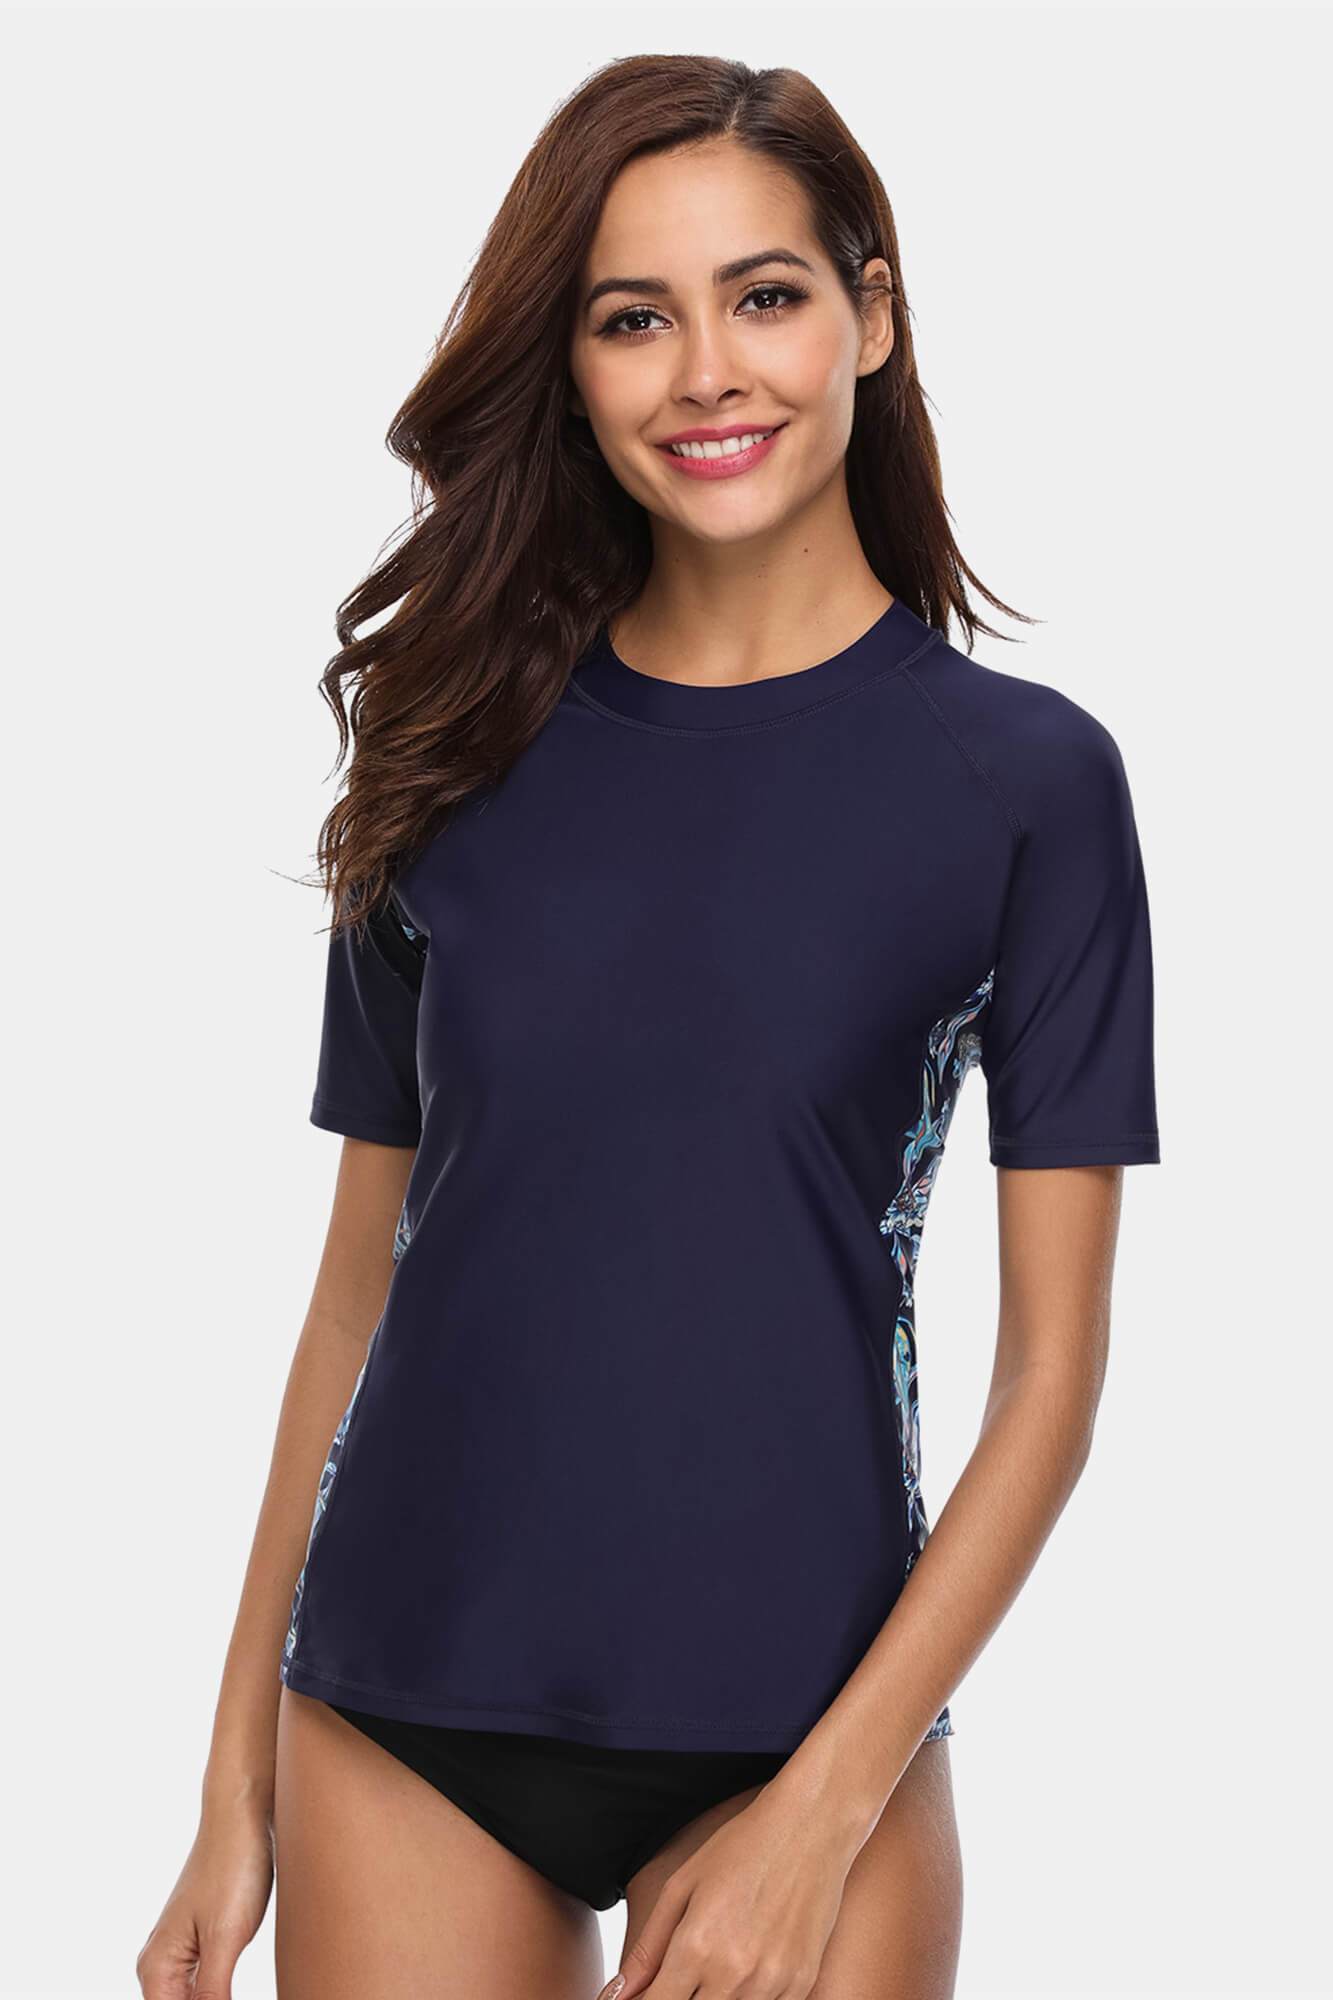 Women's Blue Printed Short Sleeve UPF 50+ Rash Guard Swim Shirt-Attraco | Fashion Outdoor Clothing